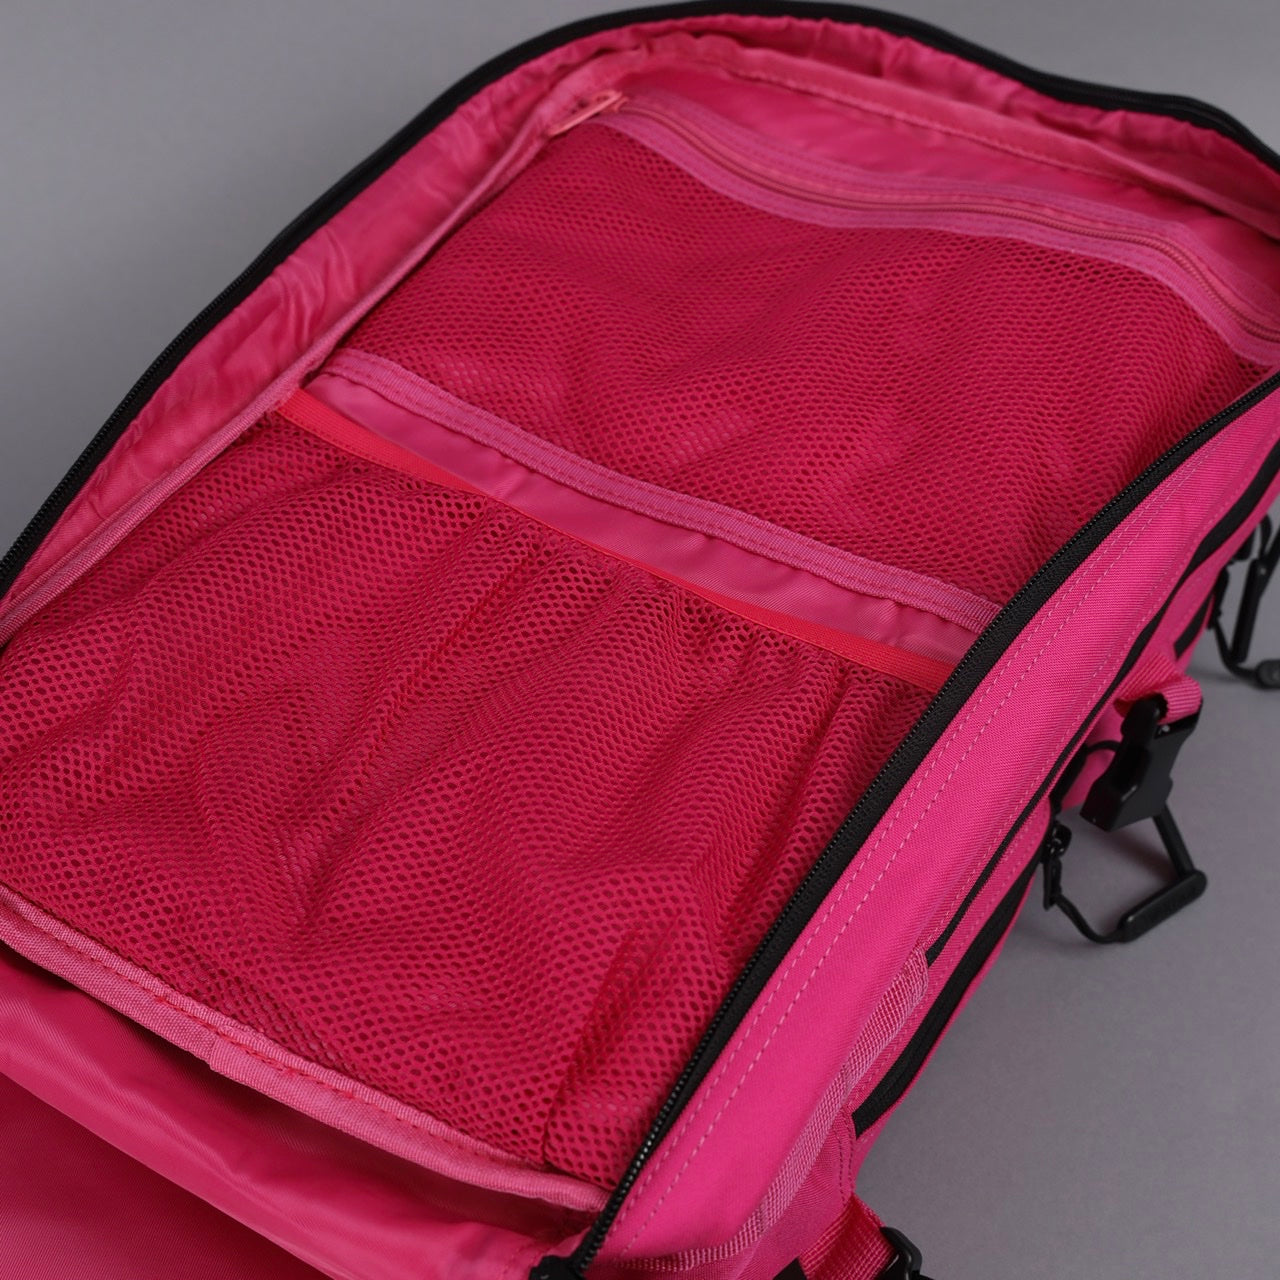 35L Backpack Voodoo Pink